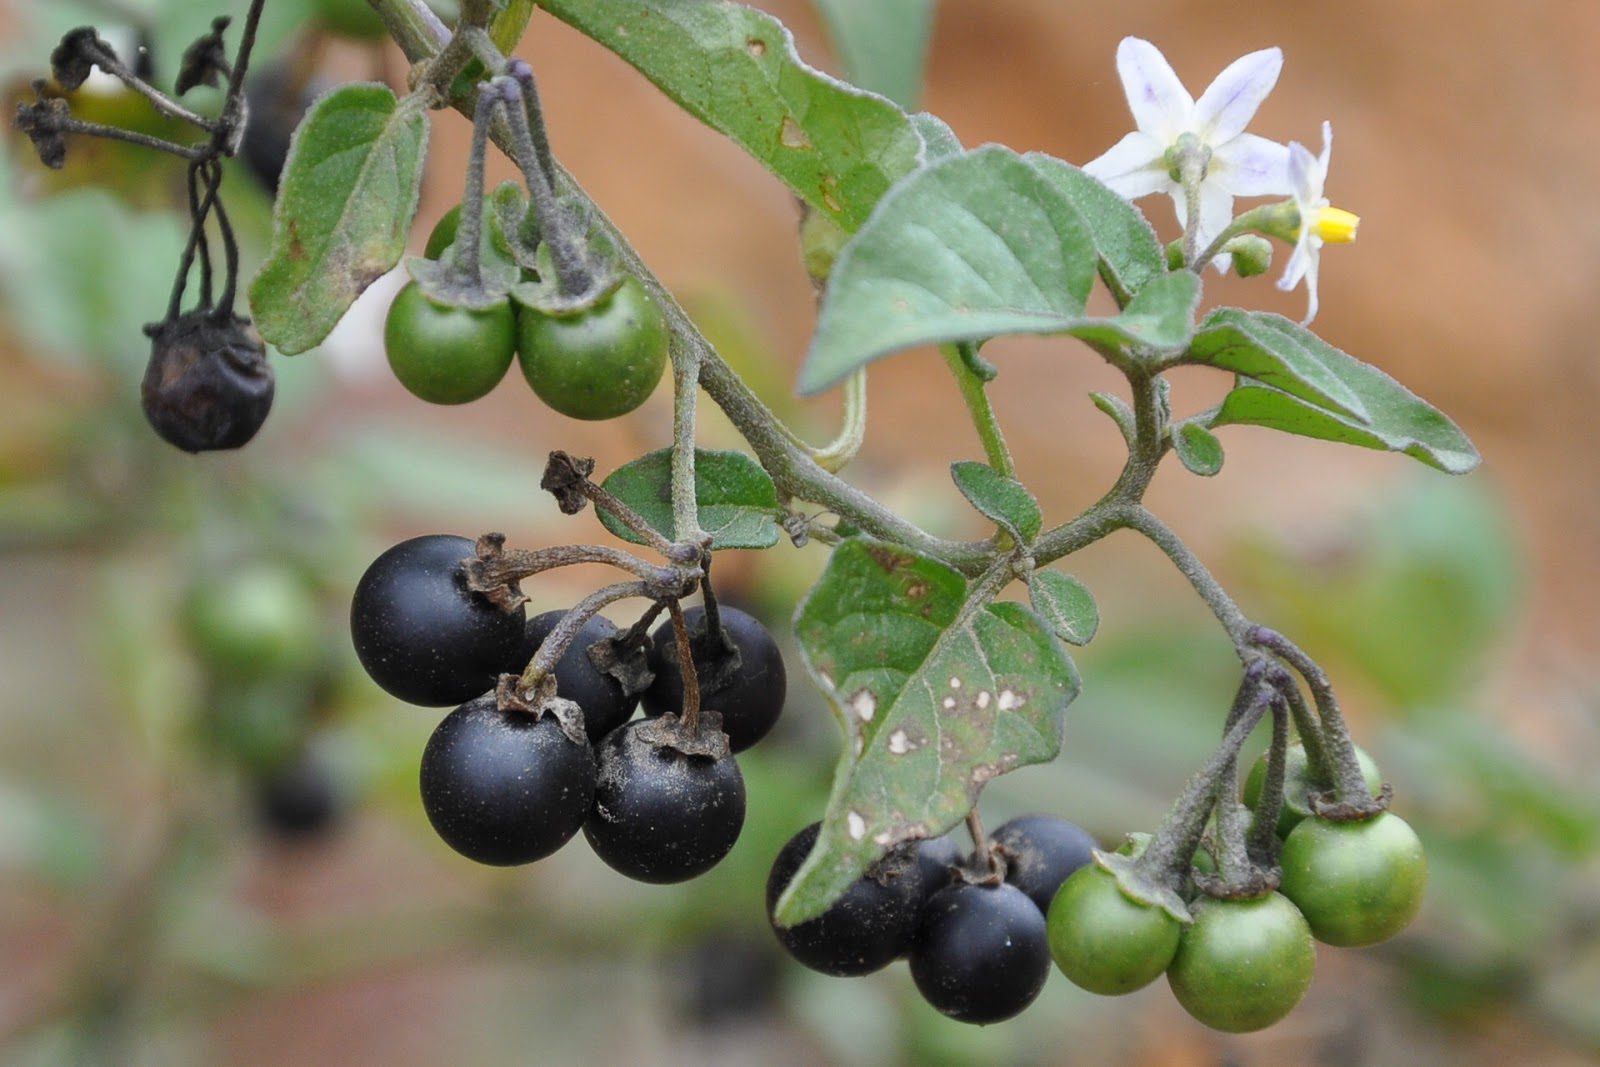 Паслен черный род. Паслен санберри. Санберри ягода. Паслен черный (Solanum nigrum). Паслен Земляничный.